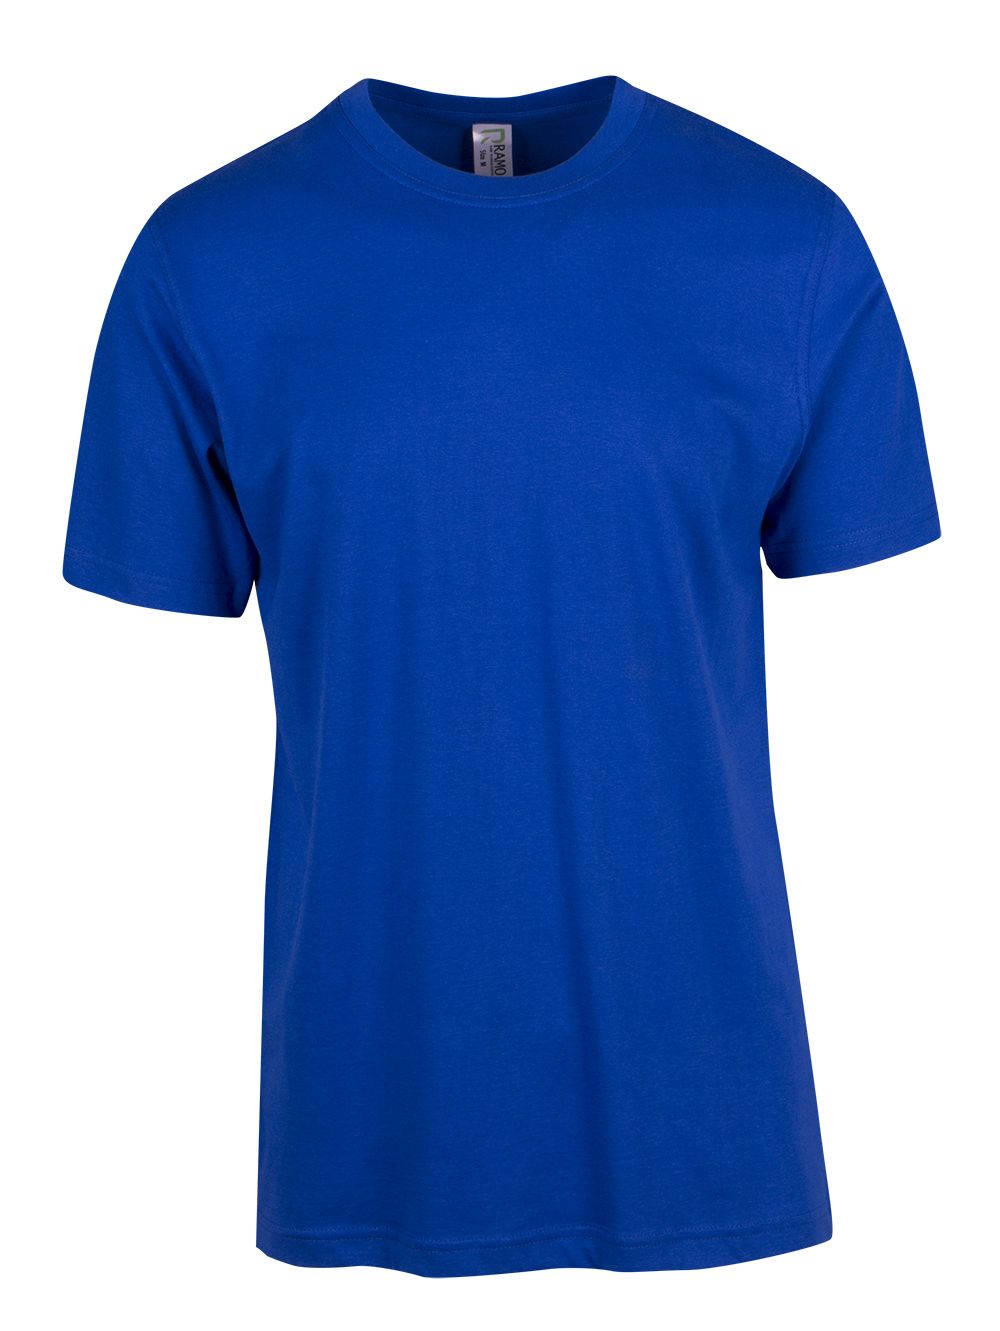 Unisex Modern Fit T-shirt